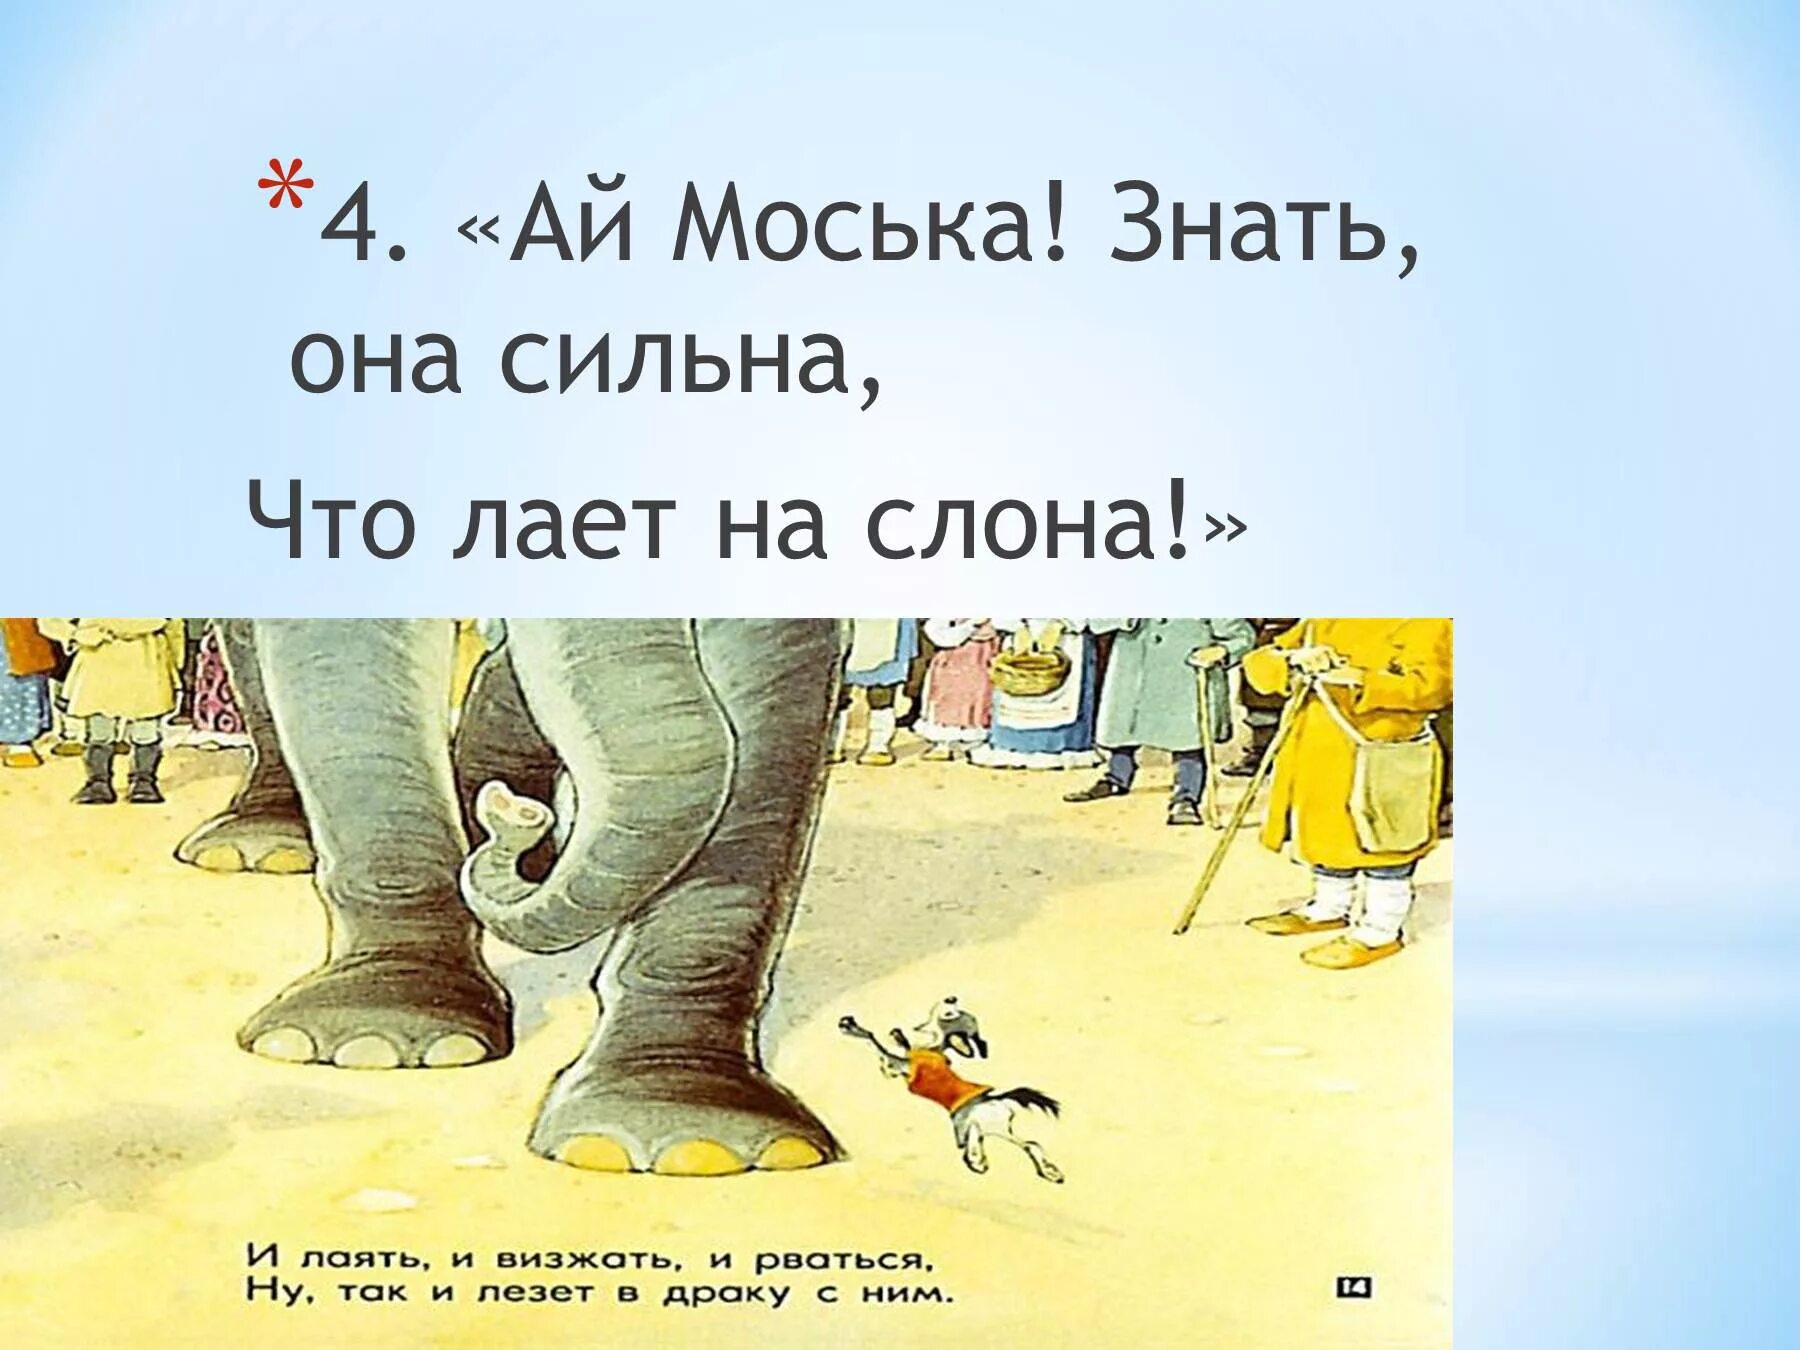 Моська лает на слона. Знать она сильна коль лает на слона. Рисунок к басне слон и моська. Знать моська сильна.